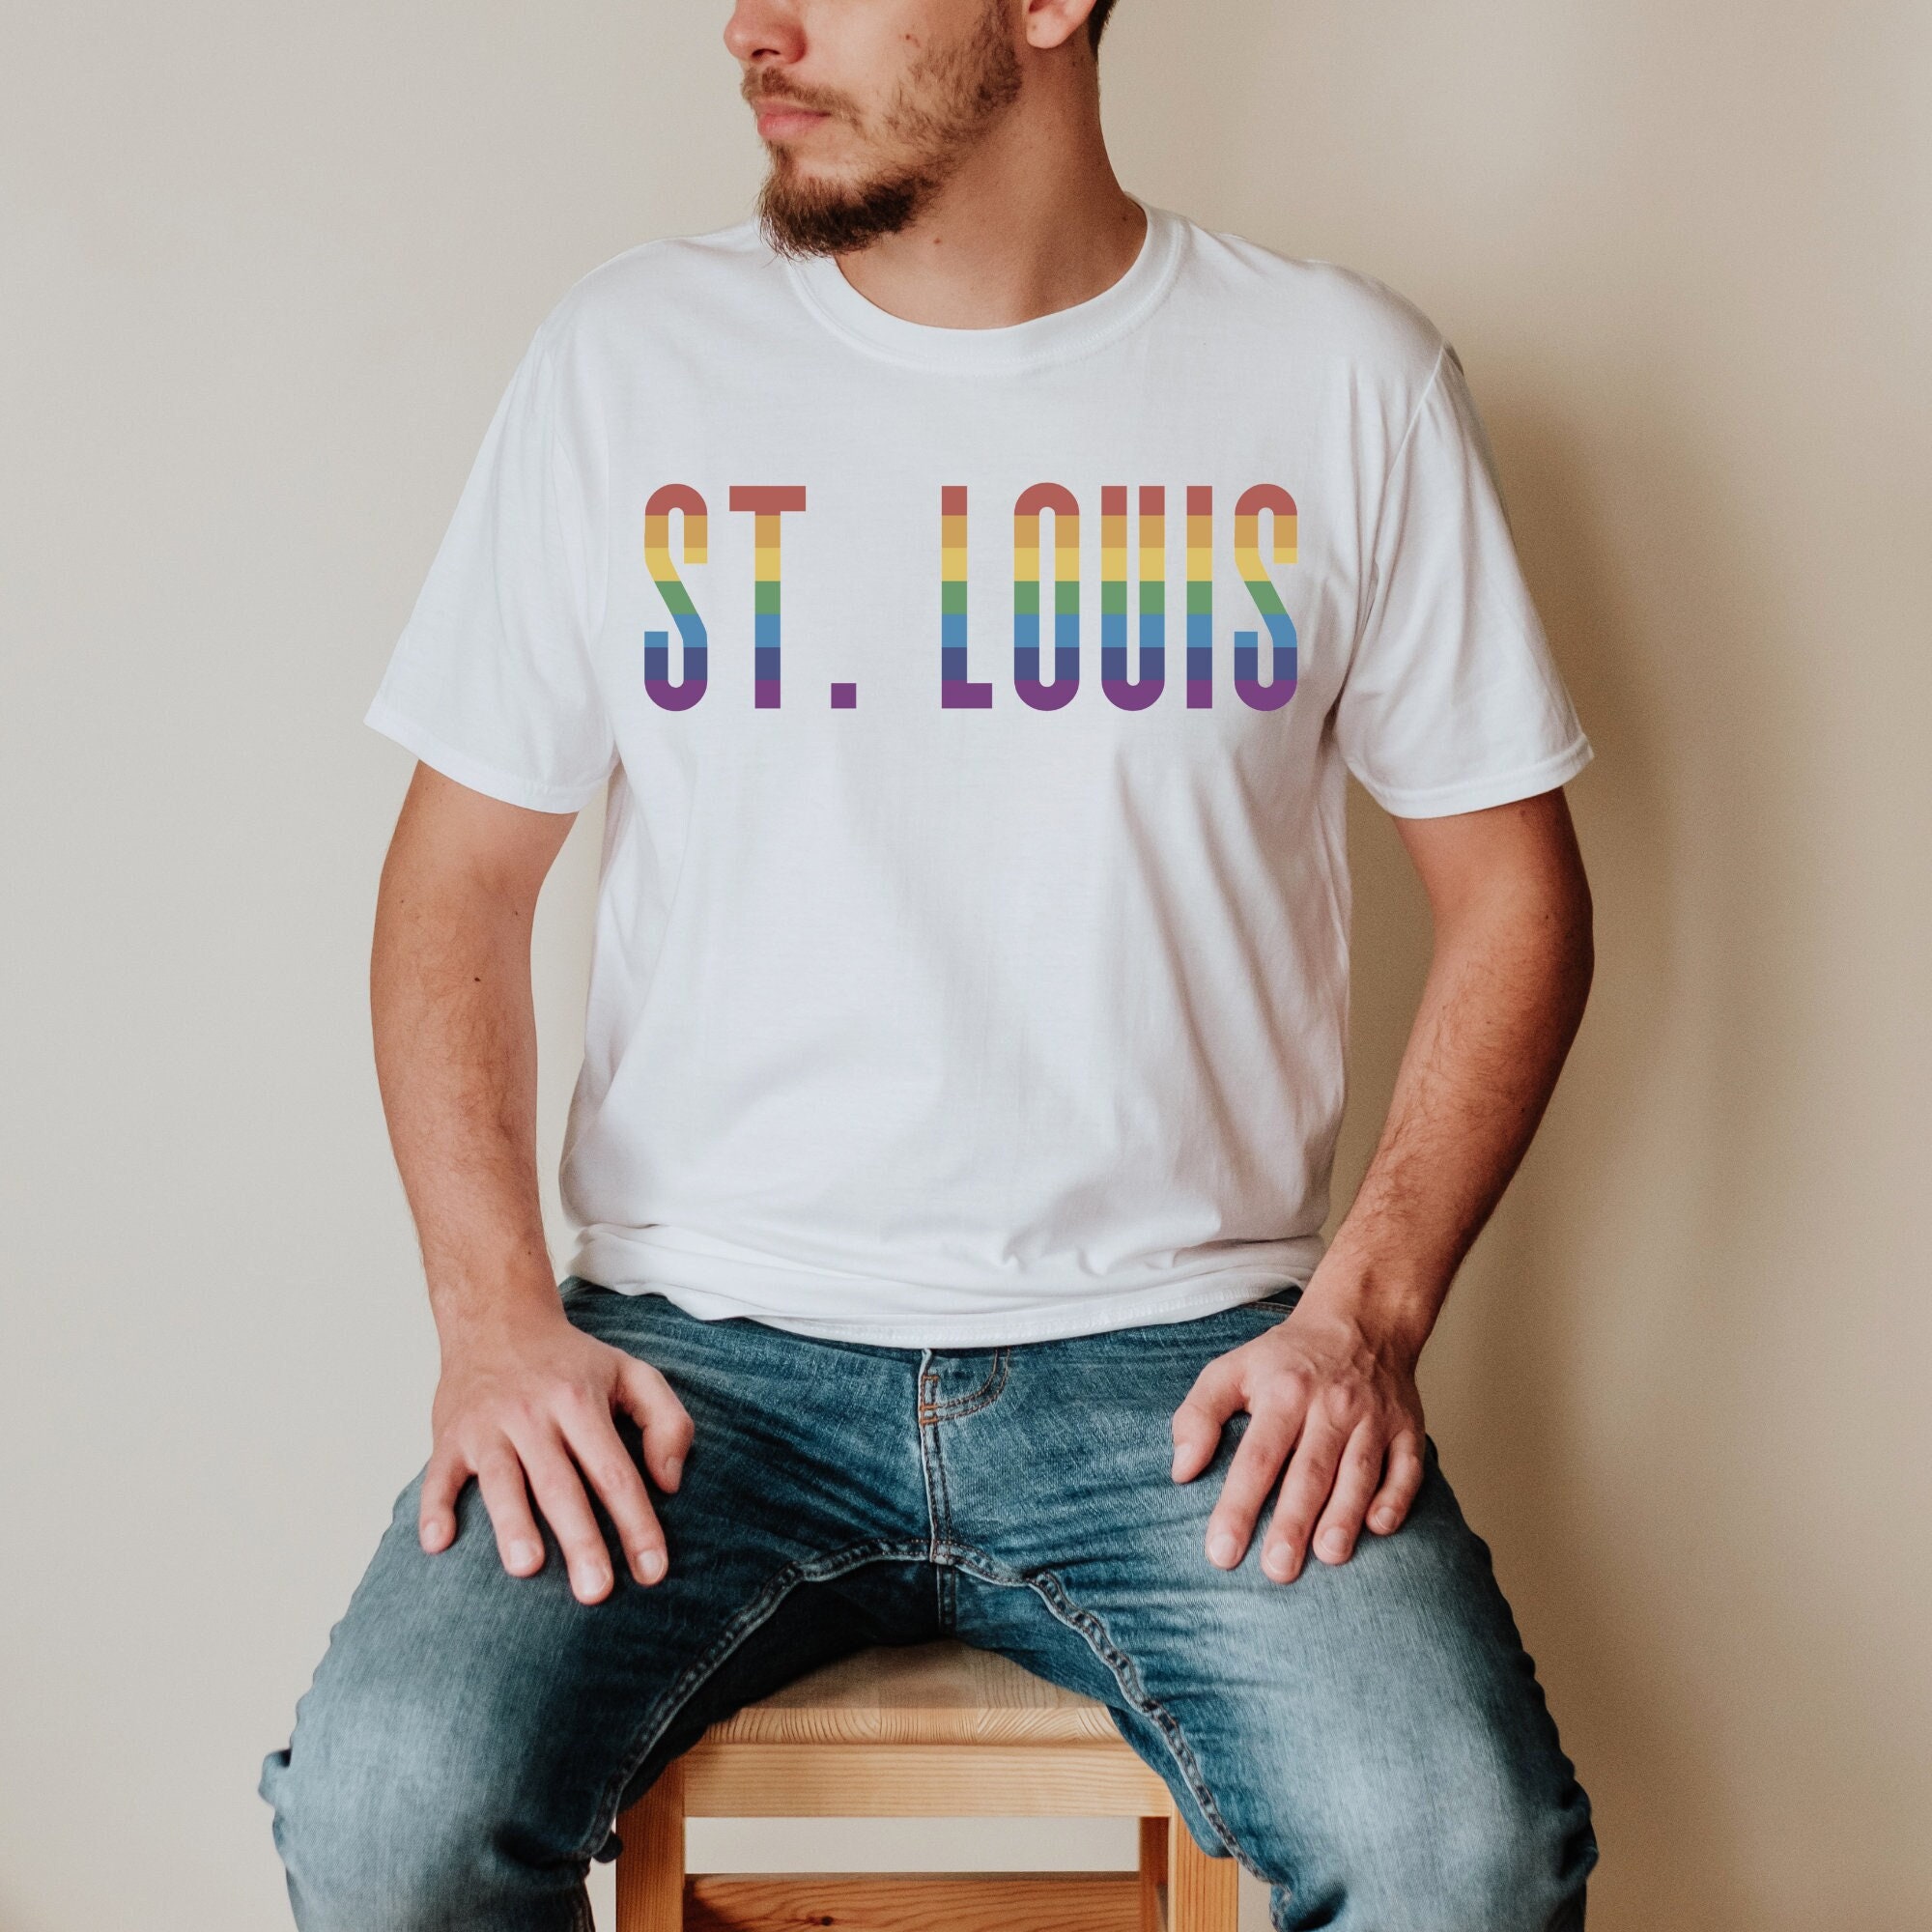 St. Louis Cardinals City Pride T-Shirt - Mens